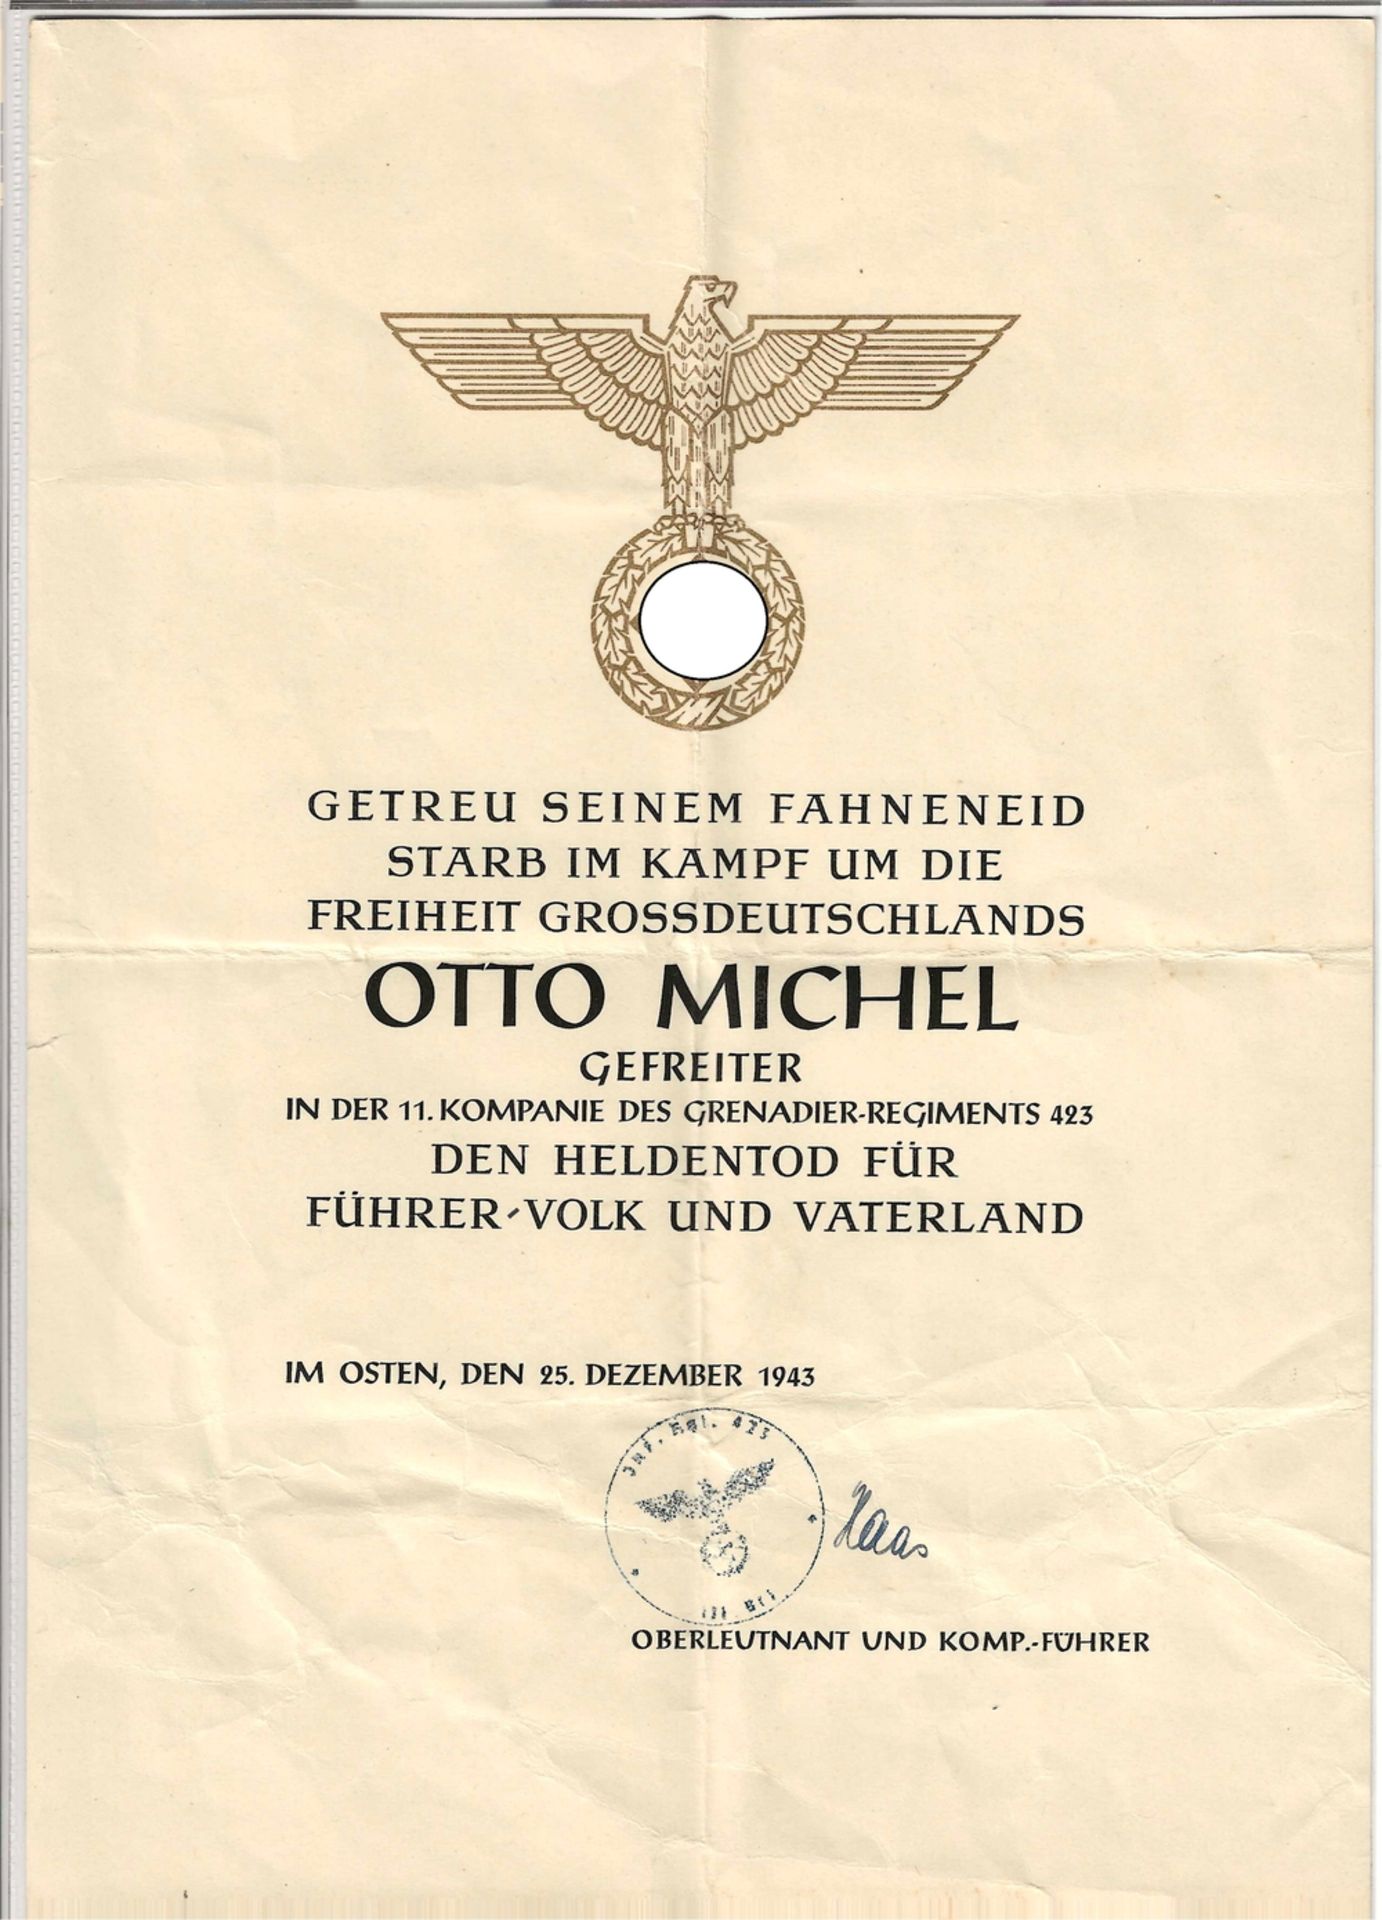 Urkunde "Getreu seinem Fahneneid starb im Kampf um die Freiheit Grossdeutschlands...in der 11.